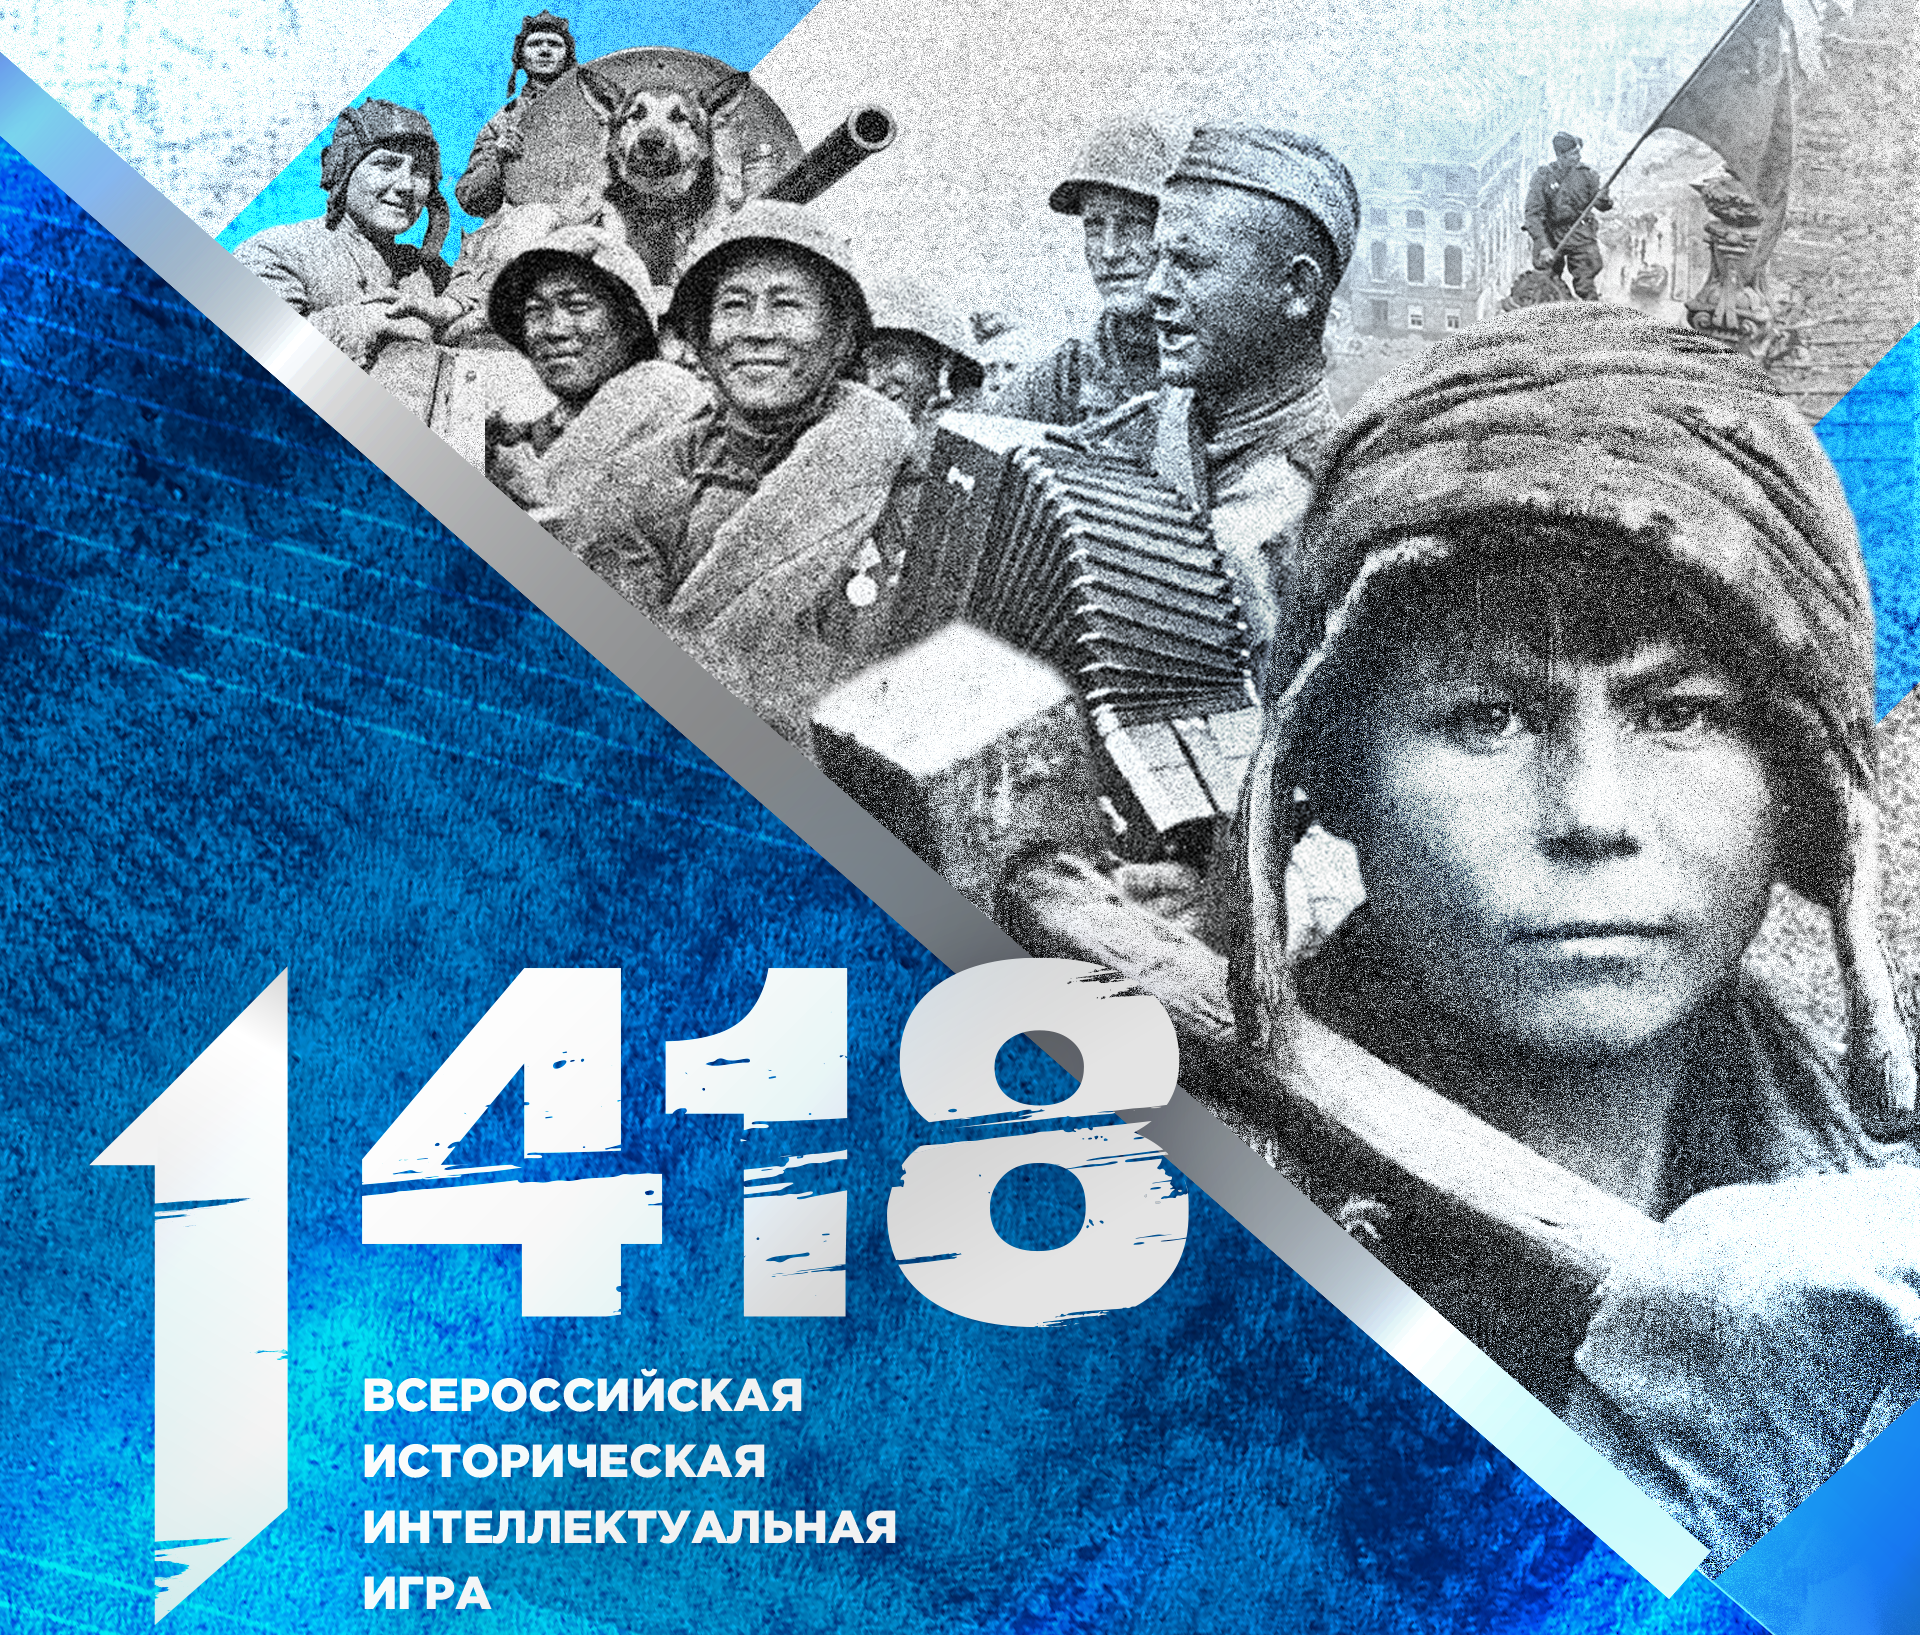 Самая массовая онлайн-игра о событиях Великой Отечественной войны вновь пройдет для школьников.